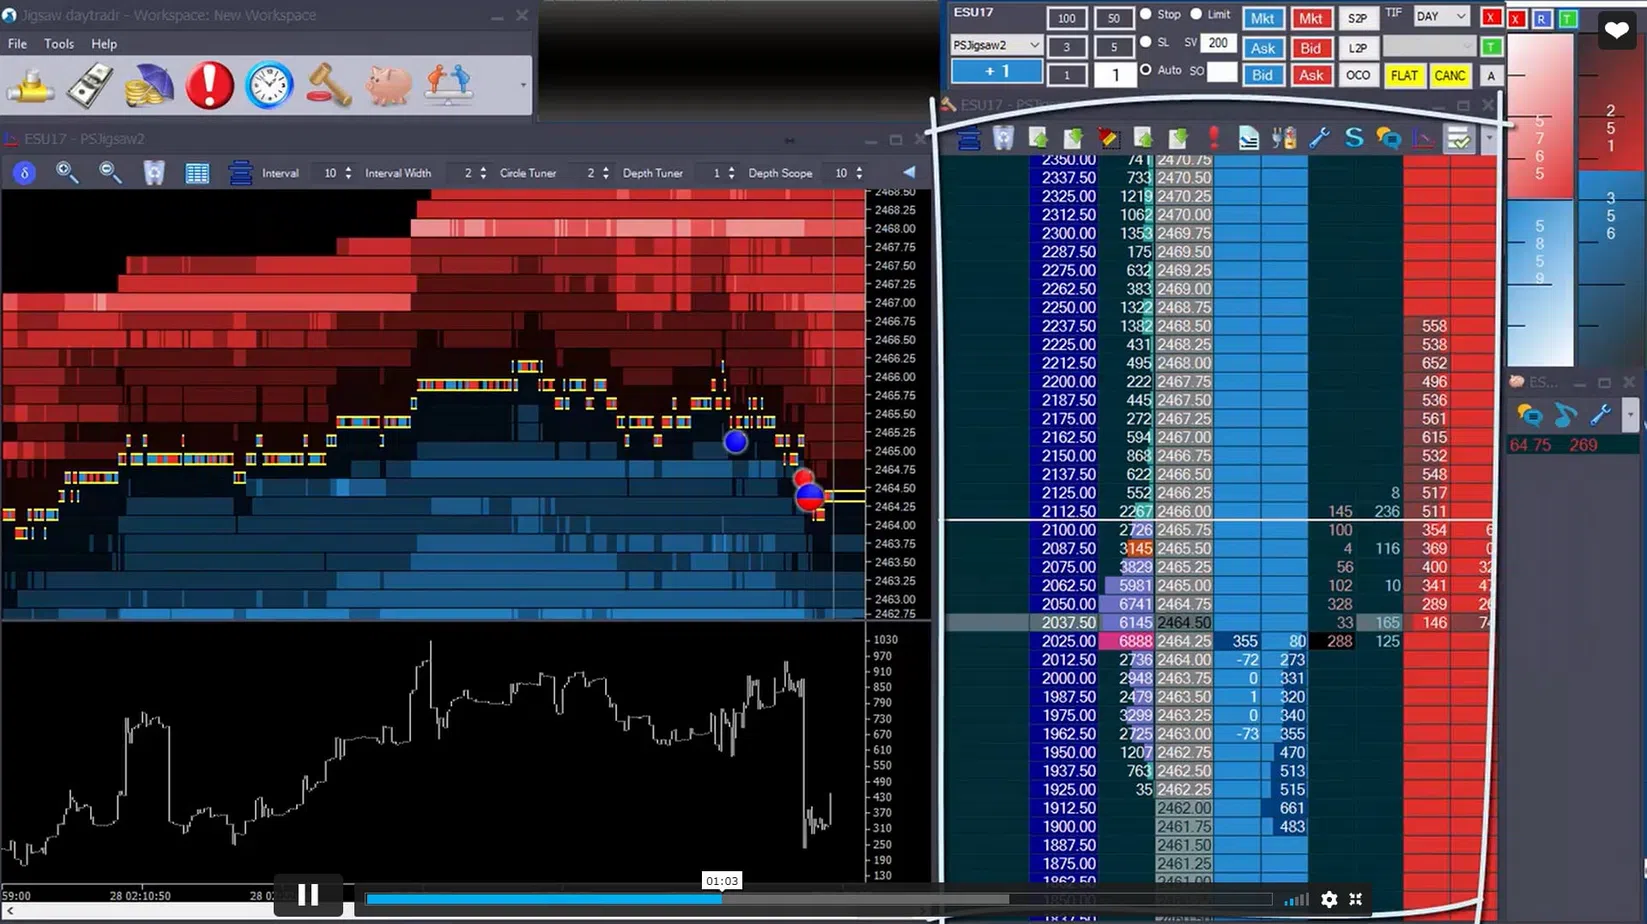 Das Bild zeigt einen Screenshot der Jigsaw Trading-Plattform. Links sieht man einen Chart, rechts die offenen Transaktionen am Markt.